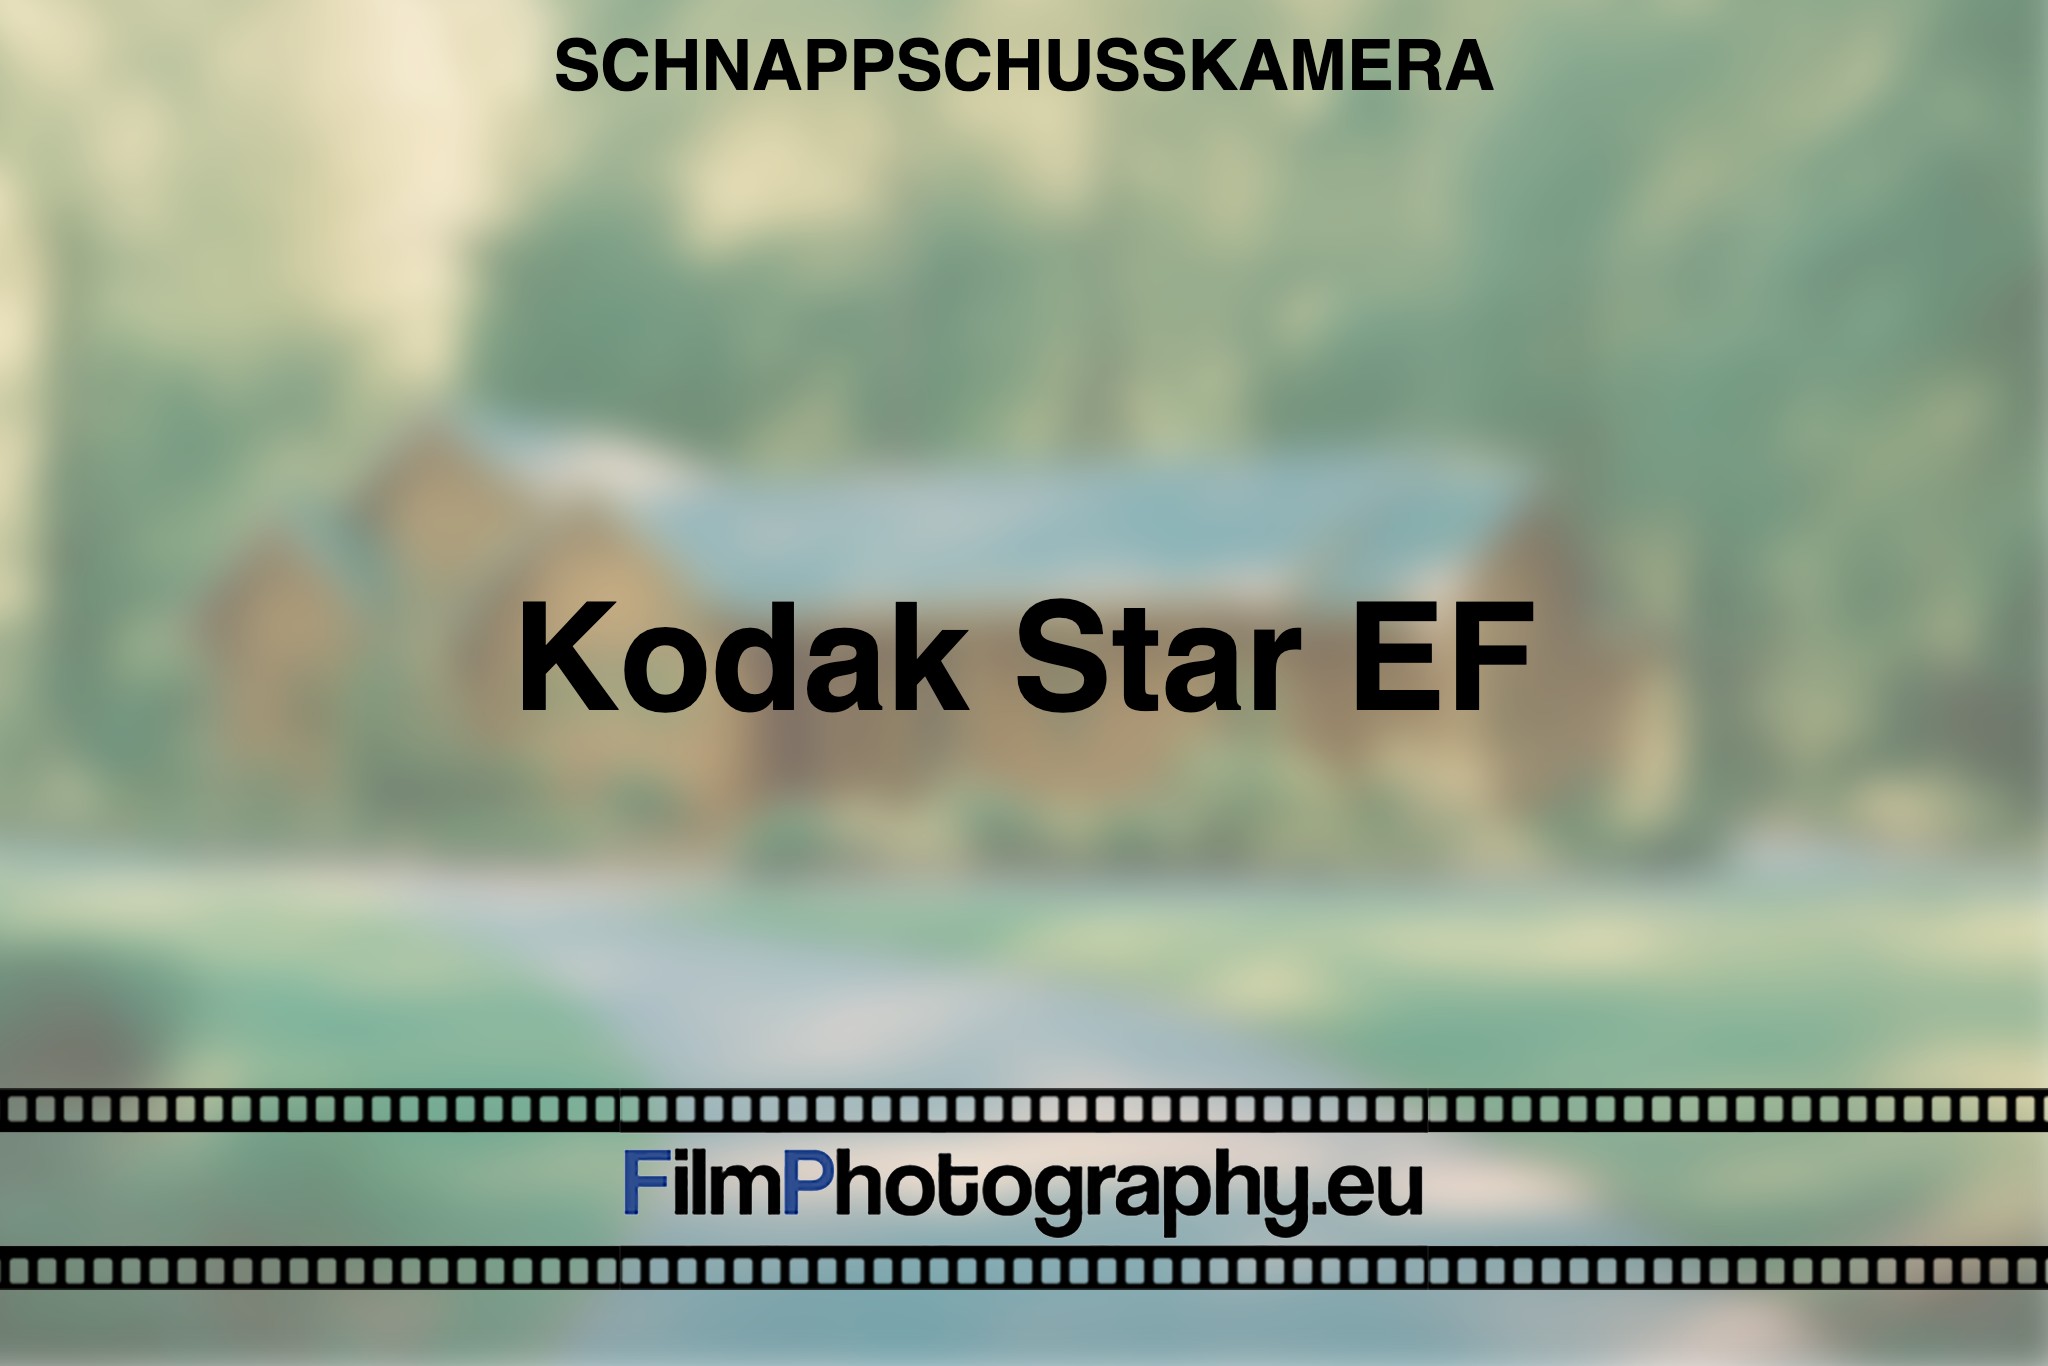 kodak-star-ef-schnappschusskamera-bnv